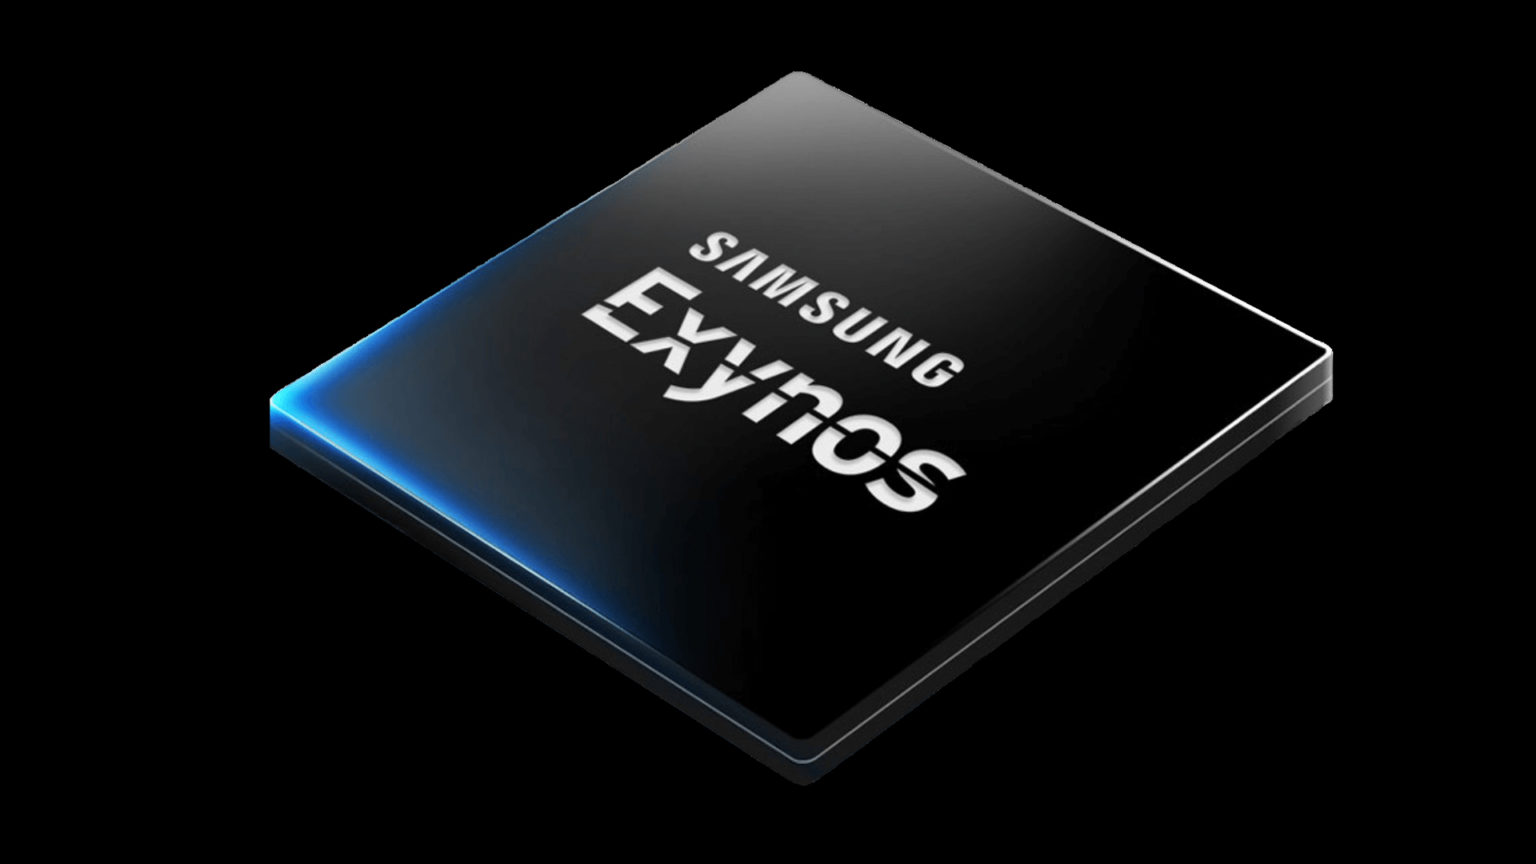 Samsung Orbis podría incluir el procesador Exynos 7420